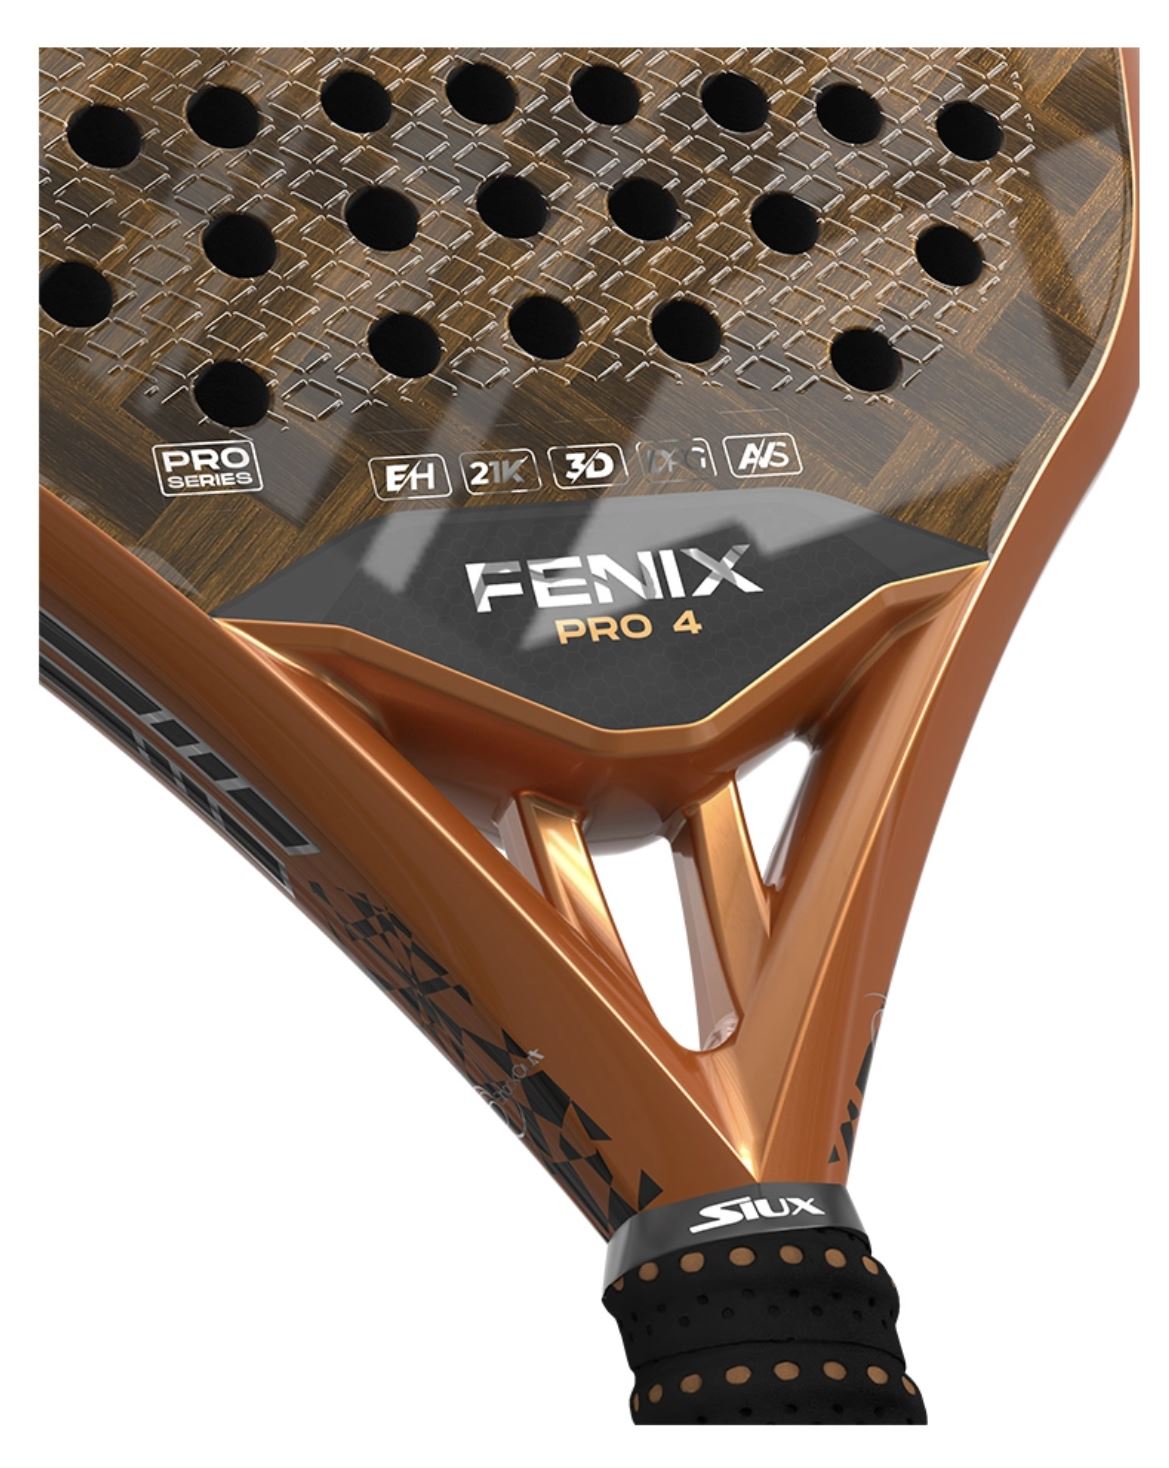 Siux Fenix 4 Pro Padel Racket